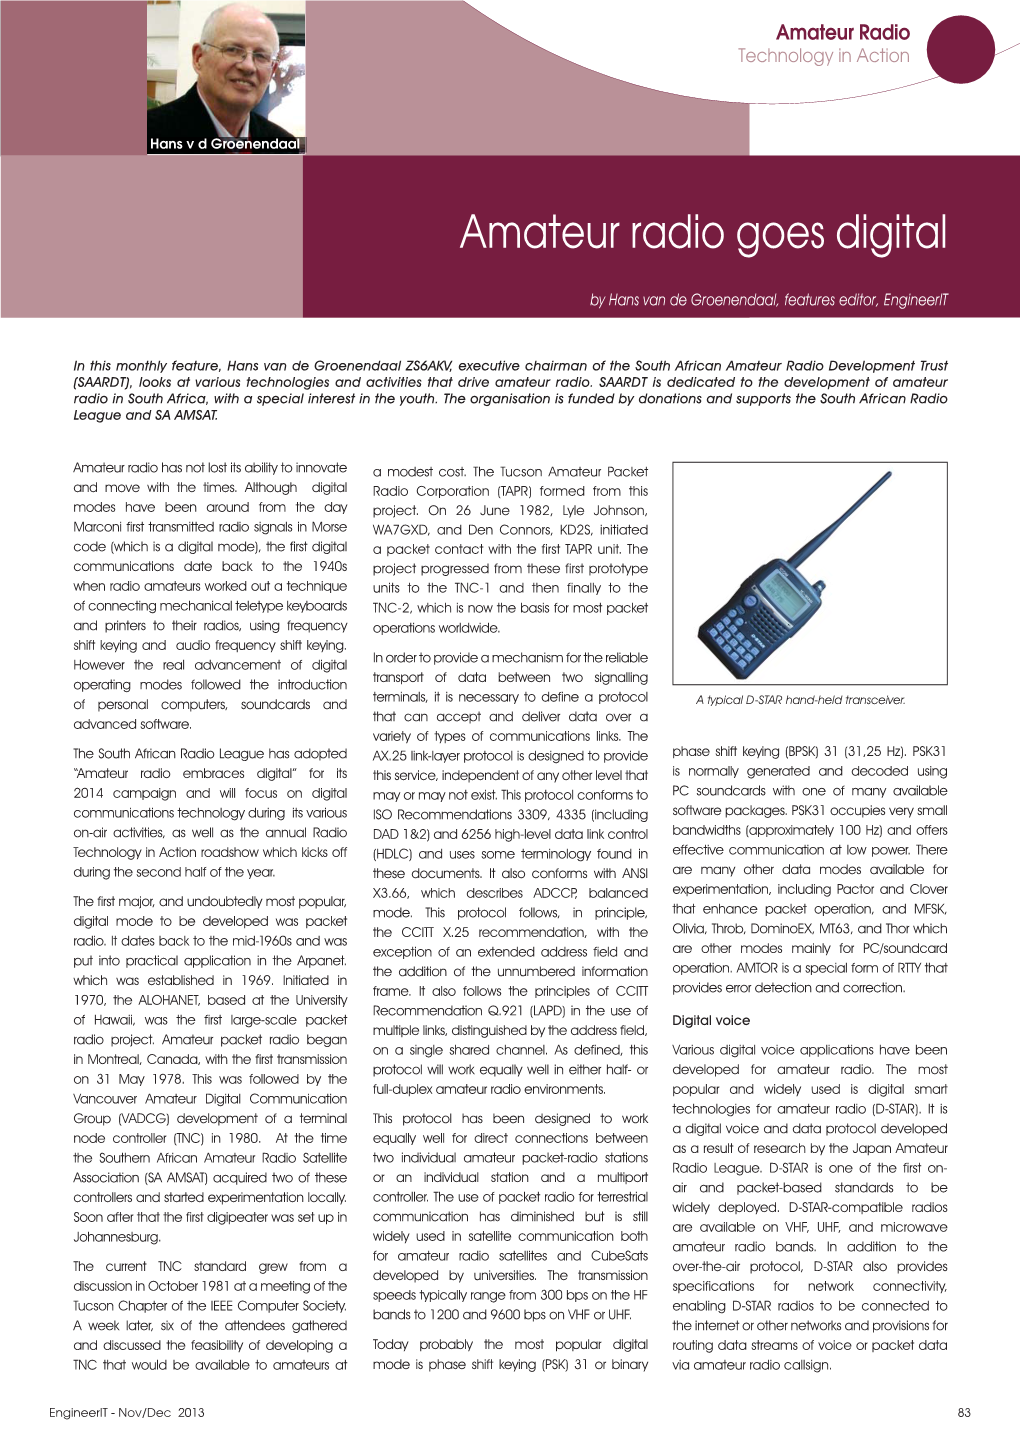 Amateur Radio Goes Digital